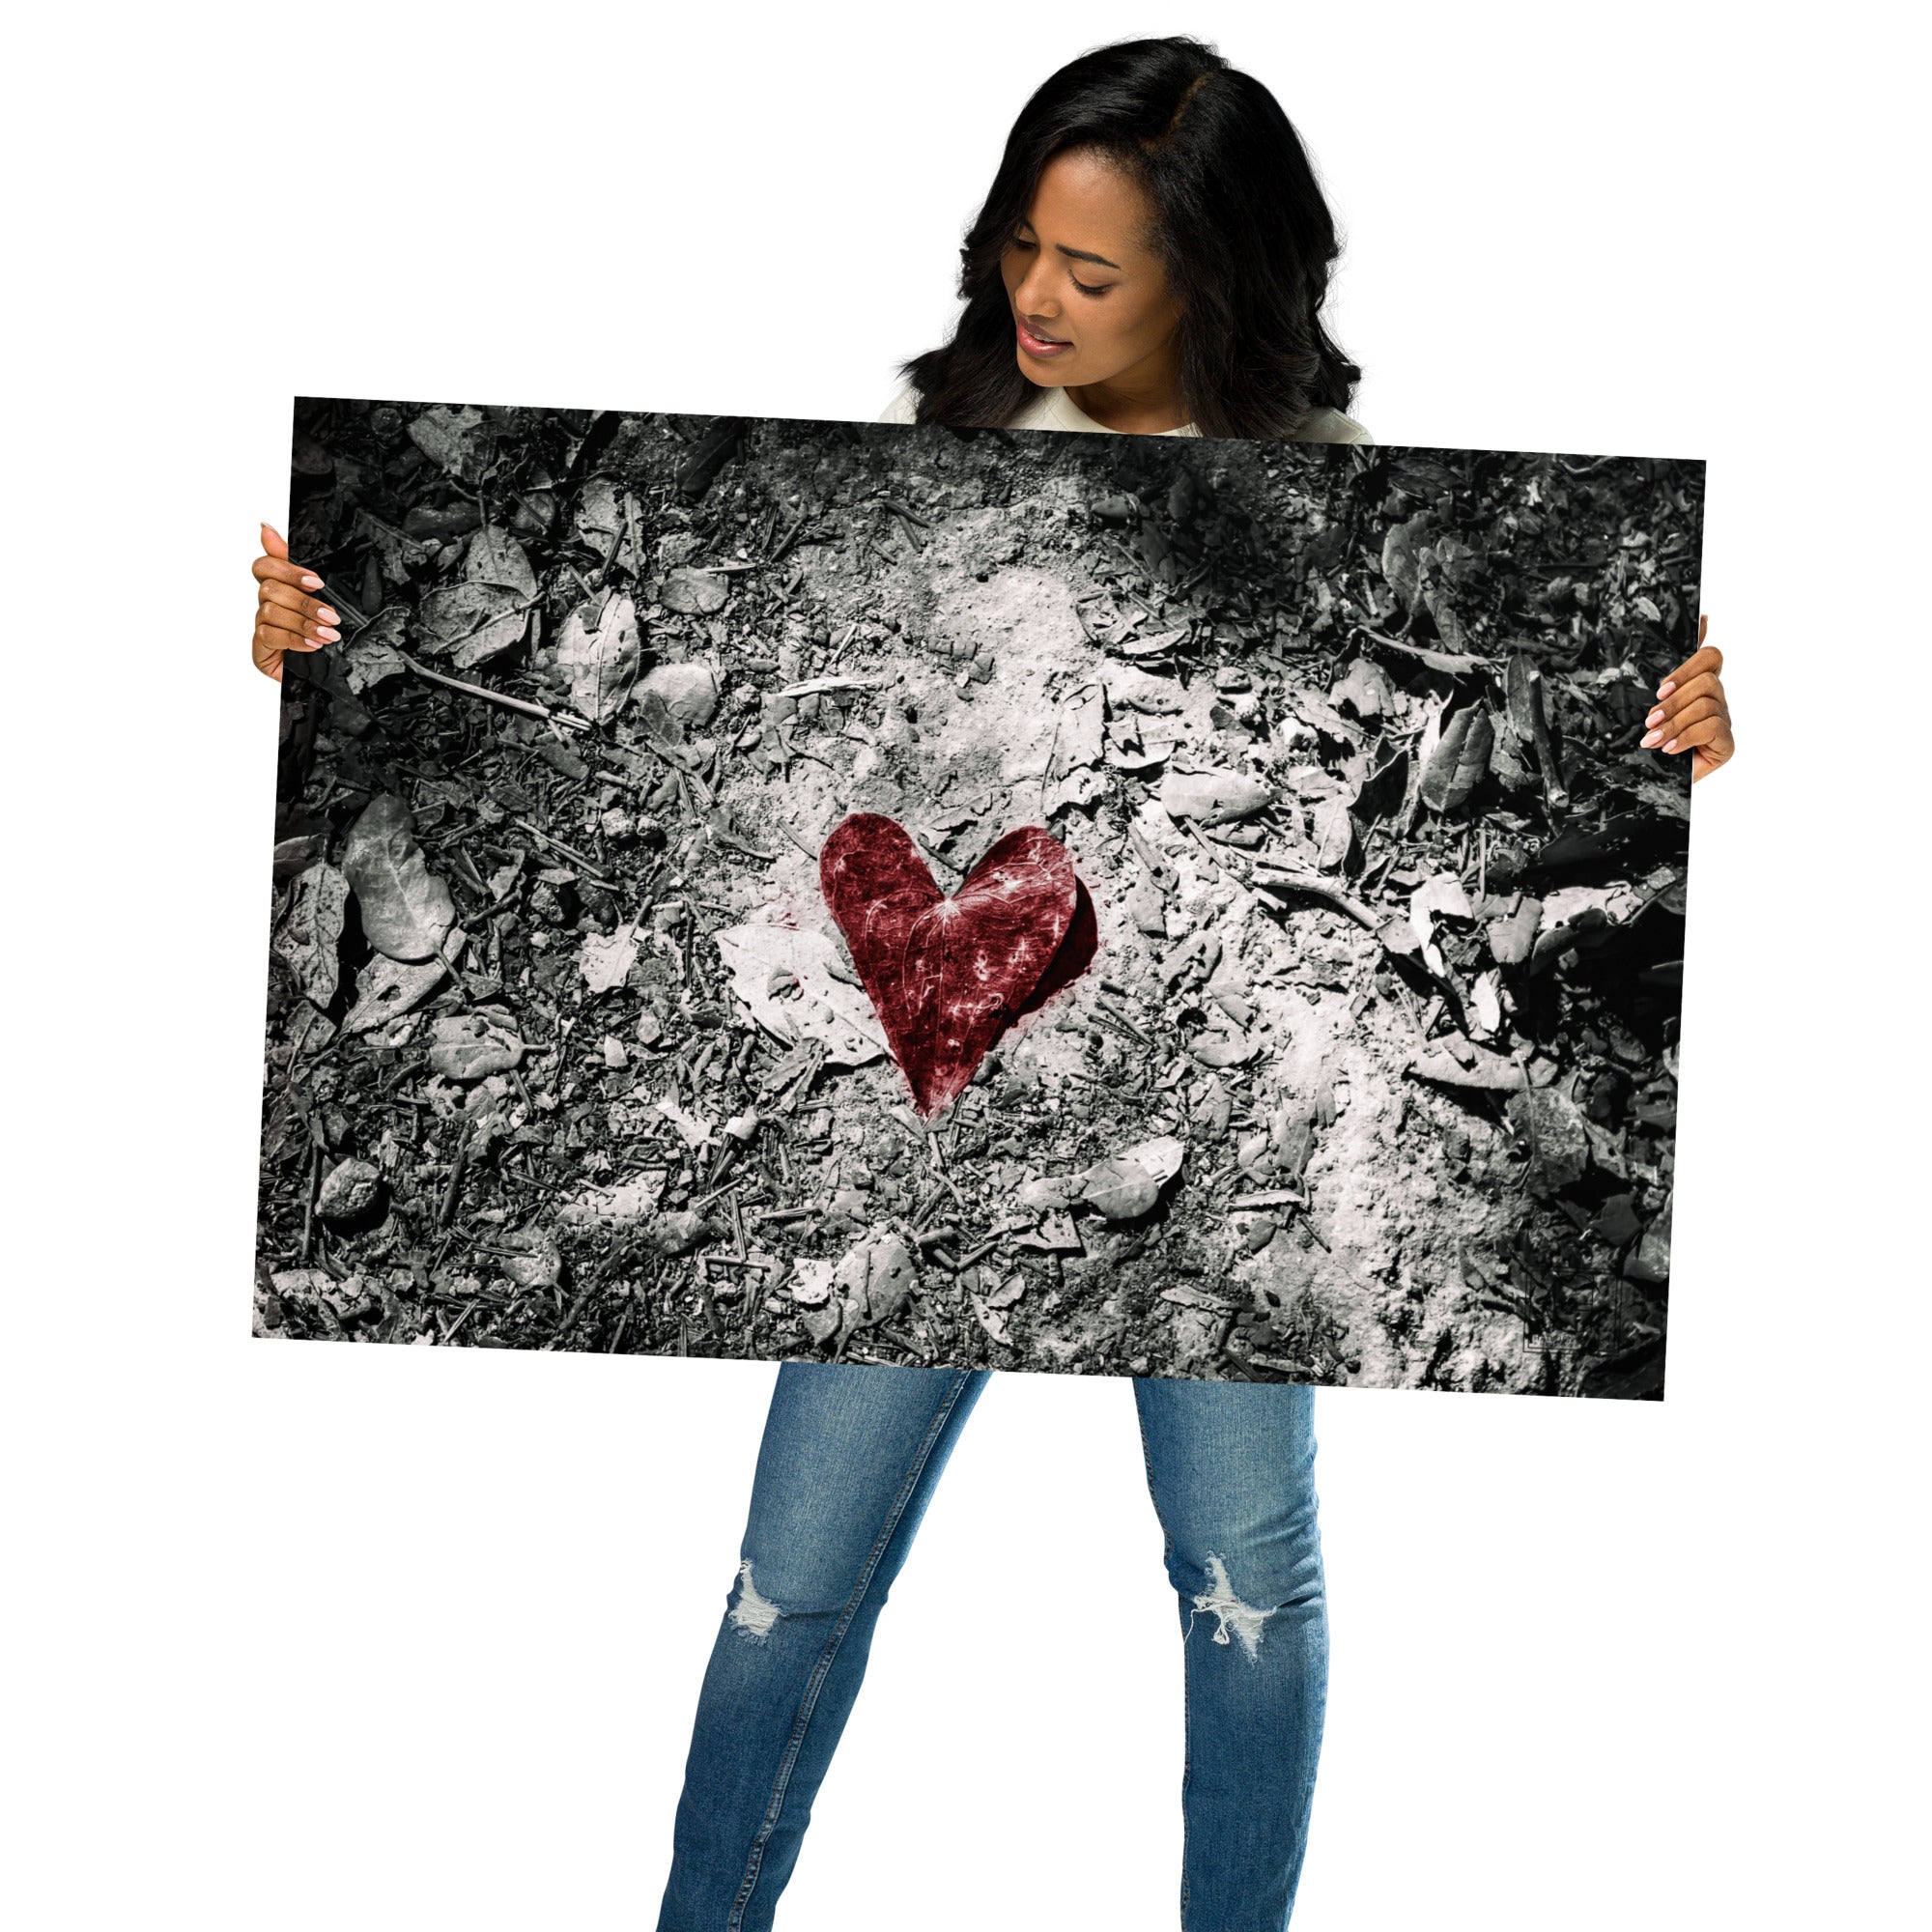 Photographie artistique mettant en avant une feuille rouge en forme de cœur au milieu d'une forêt en noir et blanc, œuvre de Hadrien Geraci.